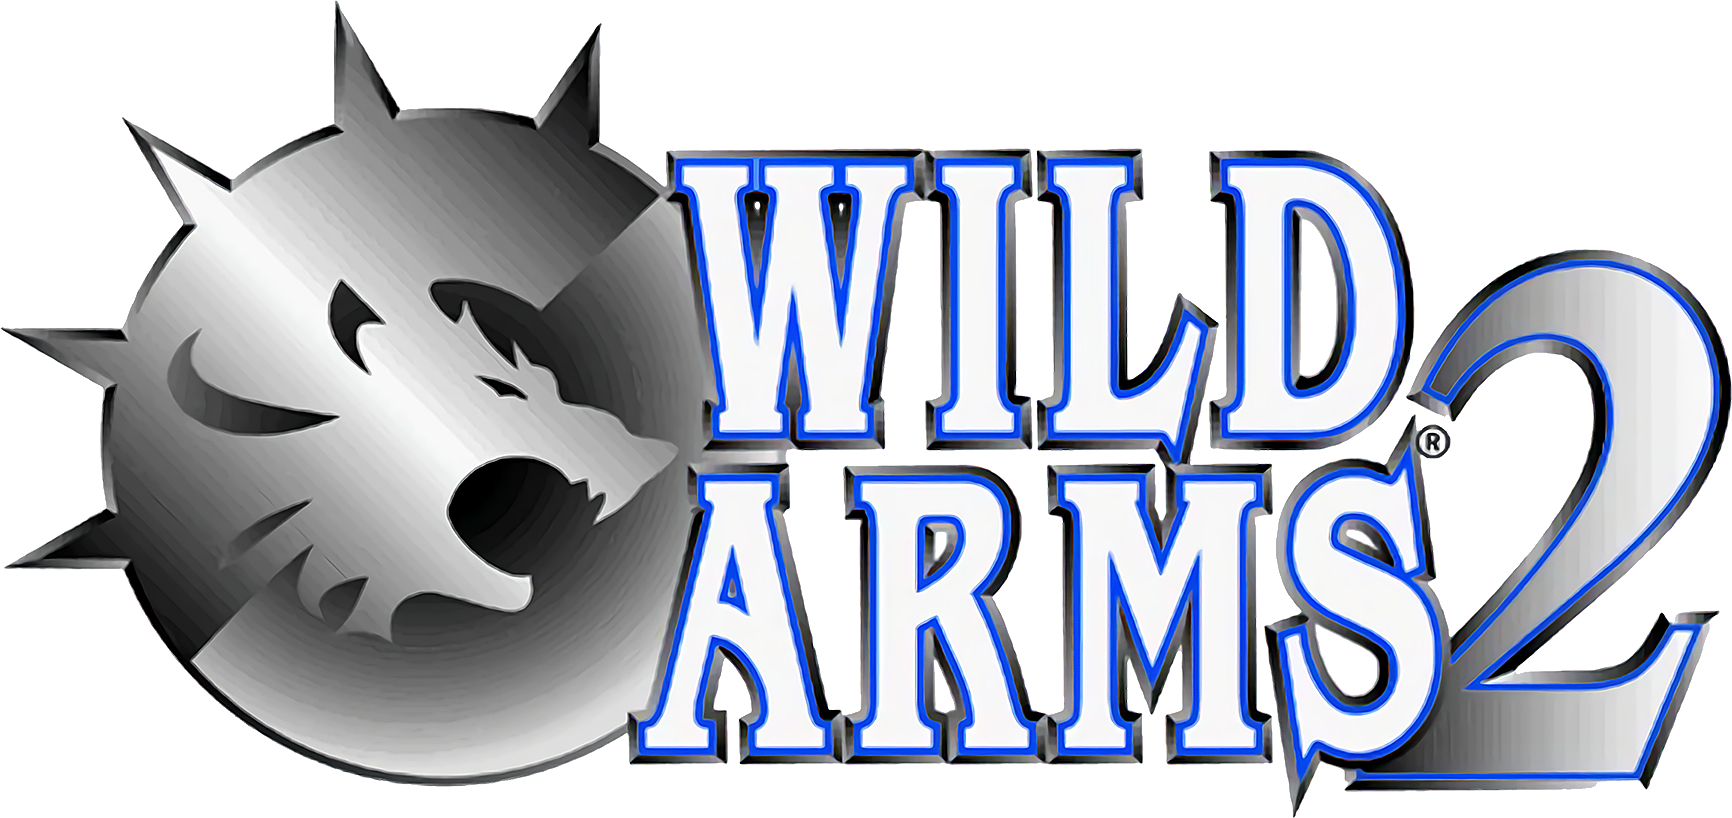 1 вилд. Wild Arms. Wild Arms 1. Wild Arms 2. Эмблема Армс.